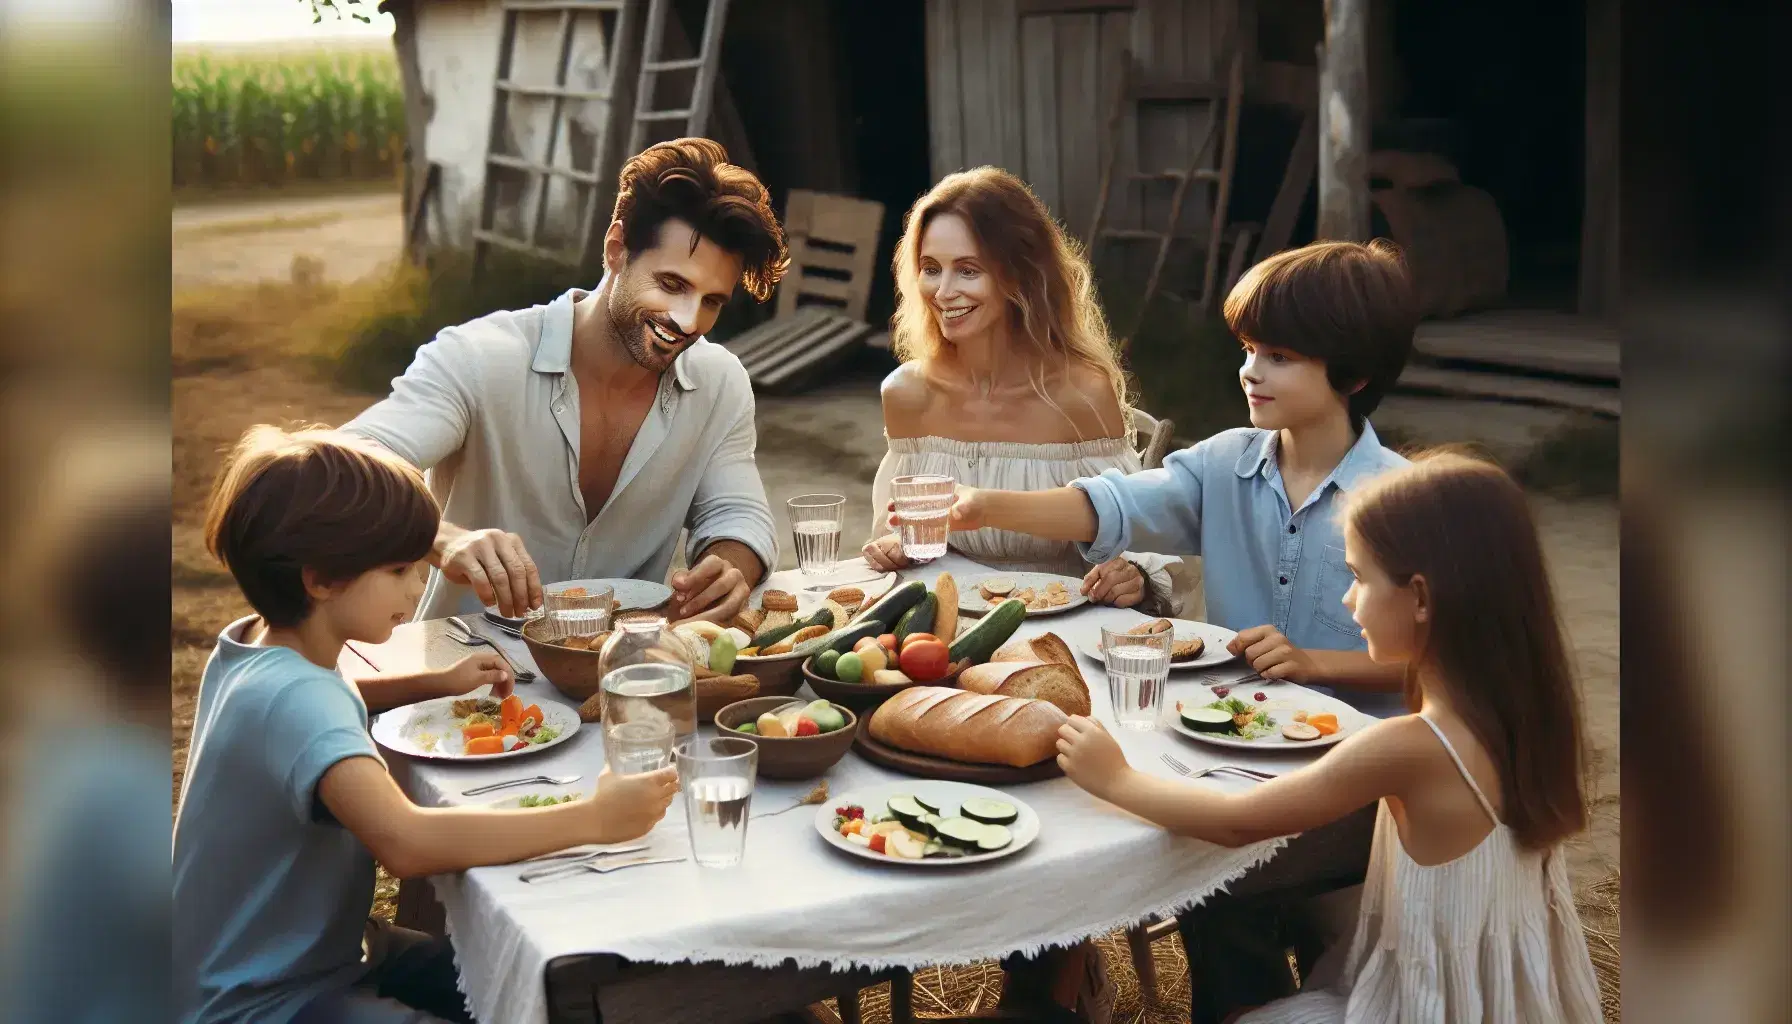 Familia disfrutando de comida al aire libre en mesa rústica con mantel blanco, rodeados de jardín verde y flores coloridas en día soleado.